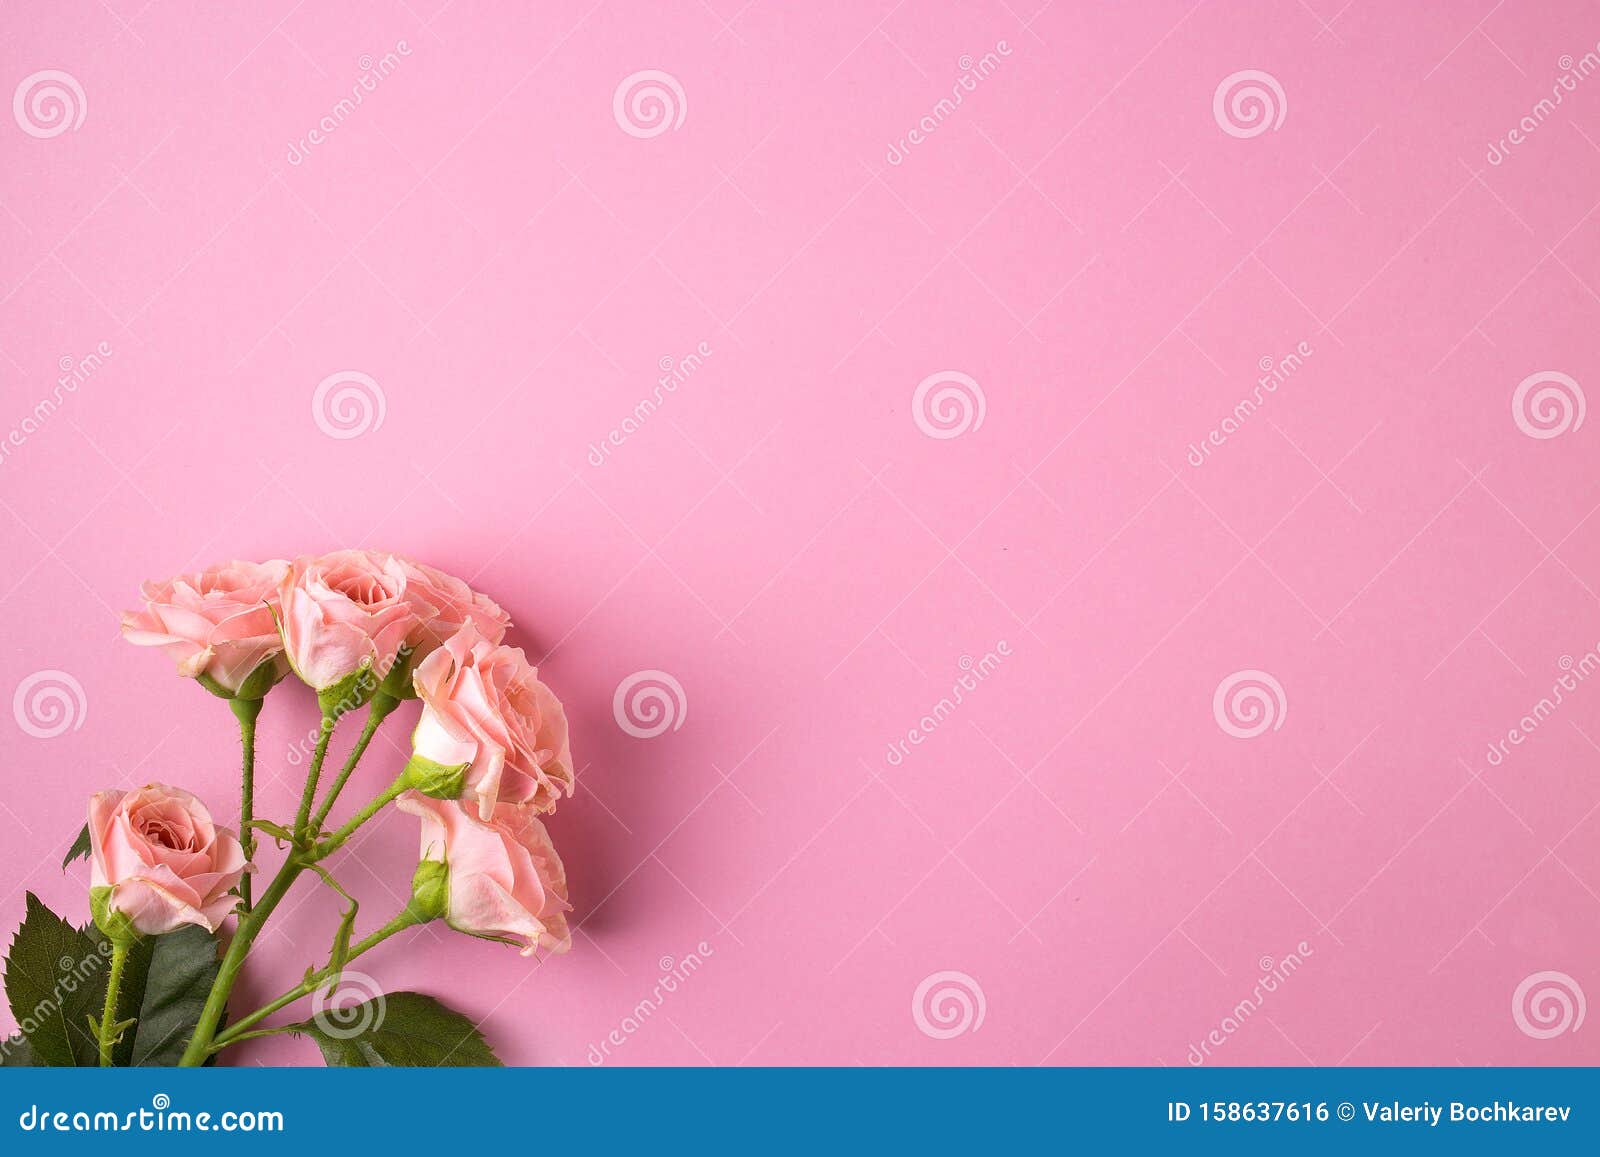 Hông hồng xinh tươi và tinh tế luôn là lựa chọn yêu thích của phái đẹp. Hinh ảnh liên quan đến hoa hồng hồng giúp khơi gợi ý tưởng về sự nữ tính, tươi mới và tinh tế. Xem ngay hình ảnh liên quan đến hoa hồng hồng!